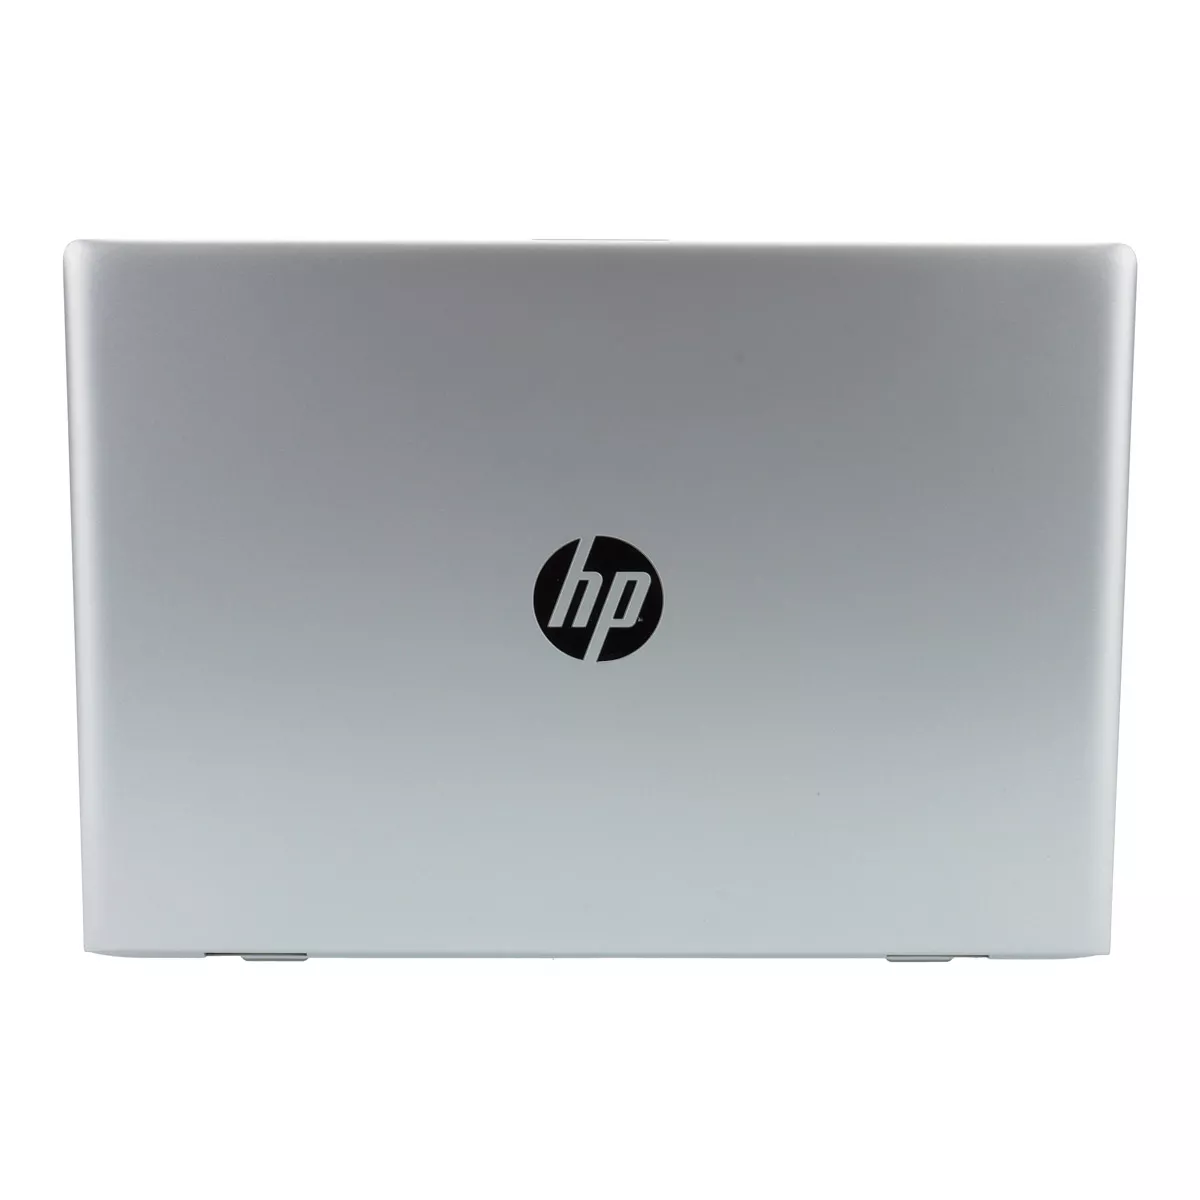 HP ProBook 640 G5 Core i7 8665U Full-HD 8 GB 240 GB M.2 nVME SSD Webcam A+